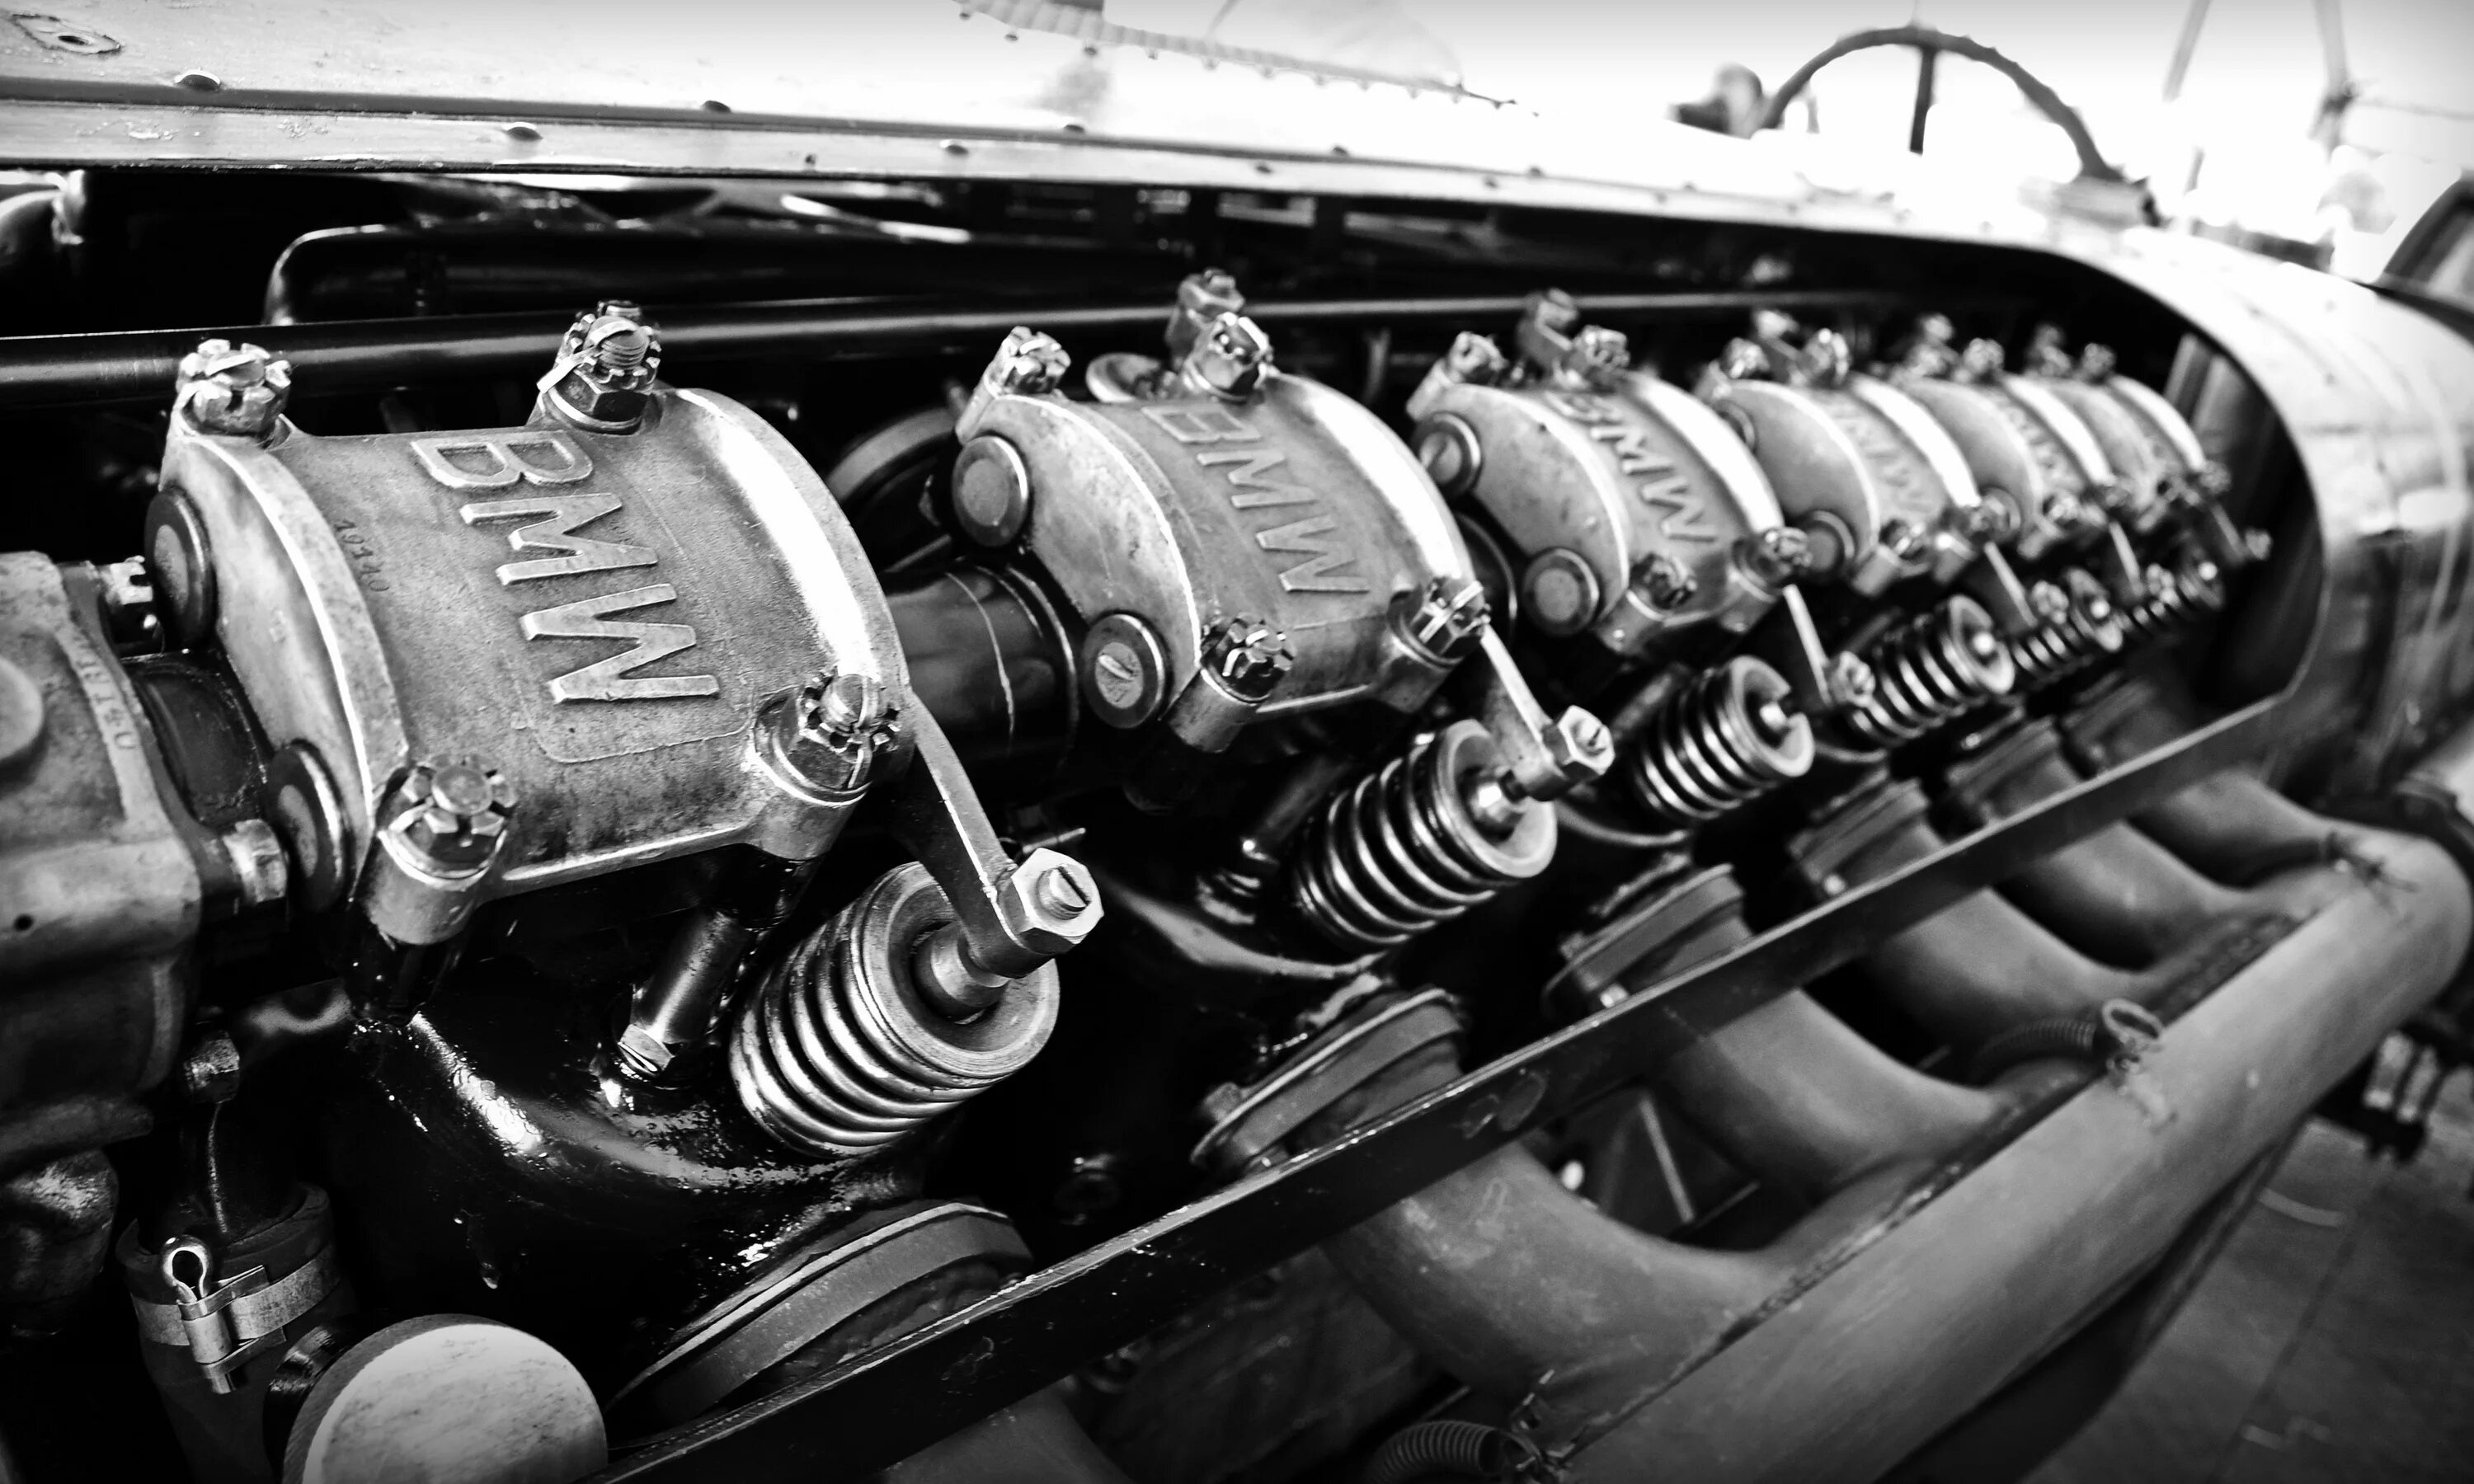 Немецкие двигатели автомобилей. Авиационные двигатели БМВ 1917. Авиационные двигатели БМВ 1913. БМВ 1917. Первый авиационный двигатель BMW.